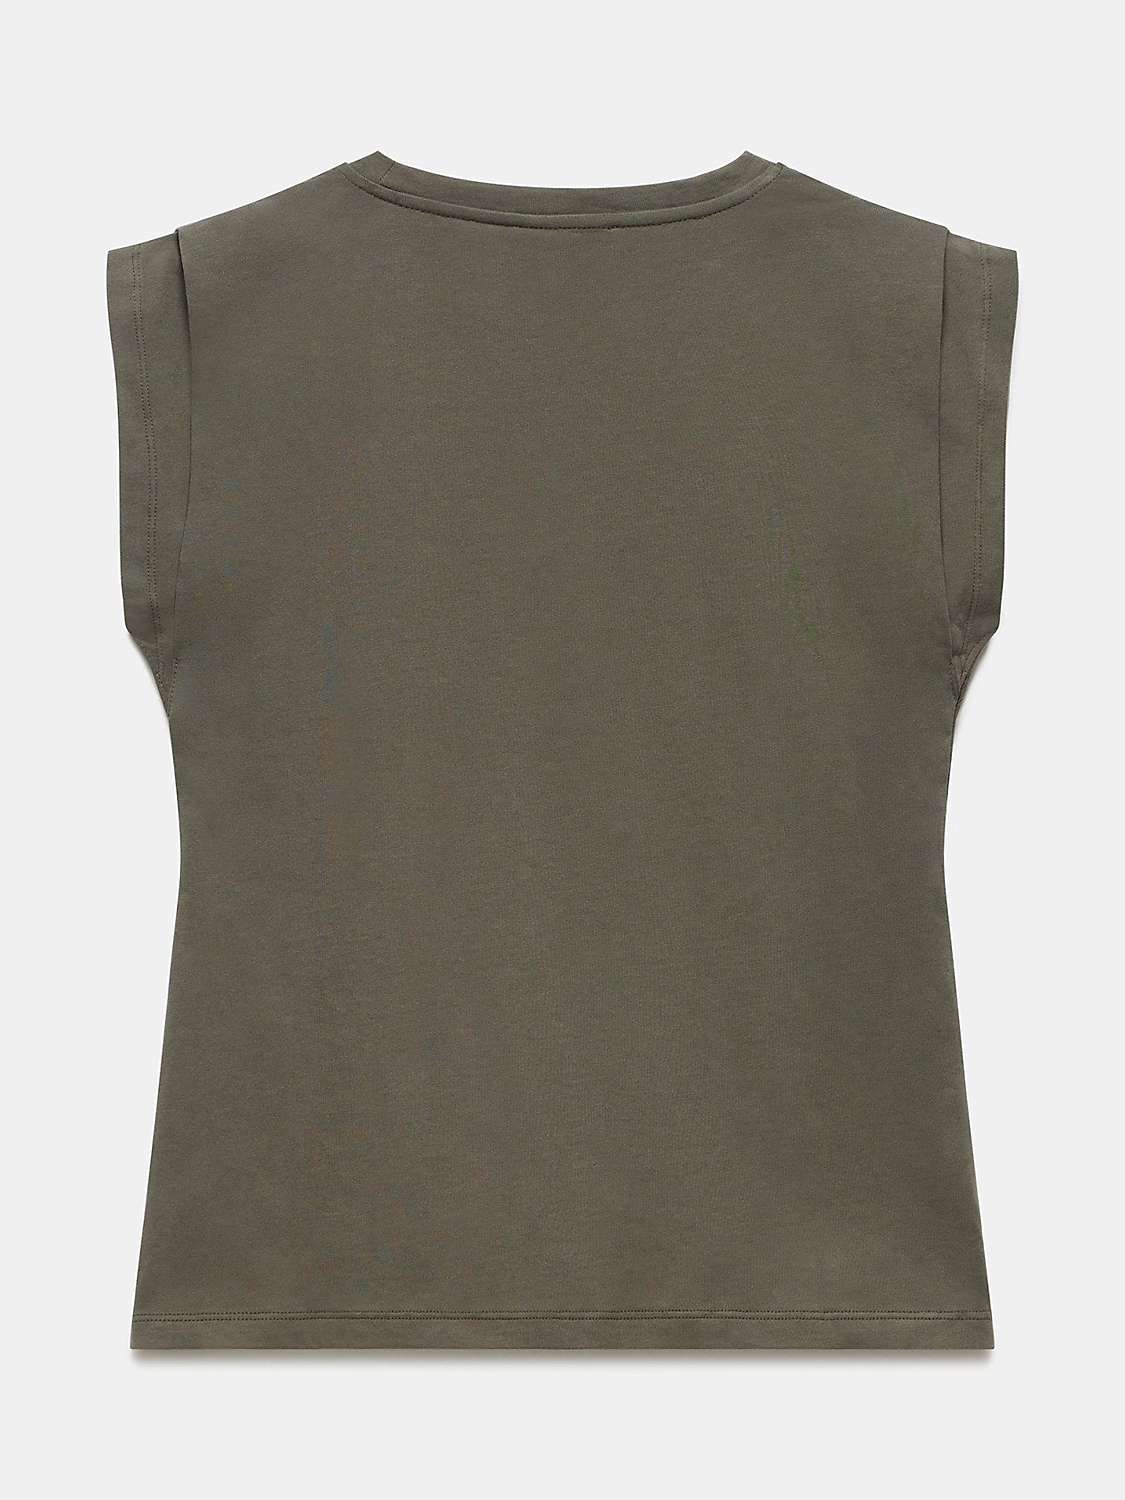 Buy Mint Velvet Shoulder T-Shirt, Khaki Online at johnlewis.com